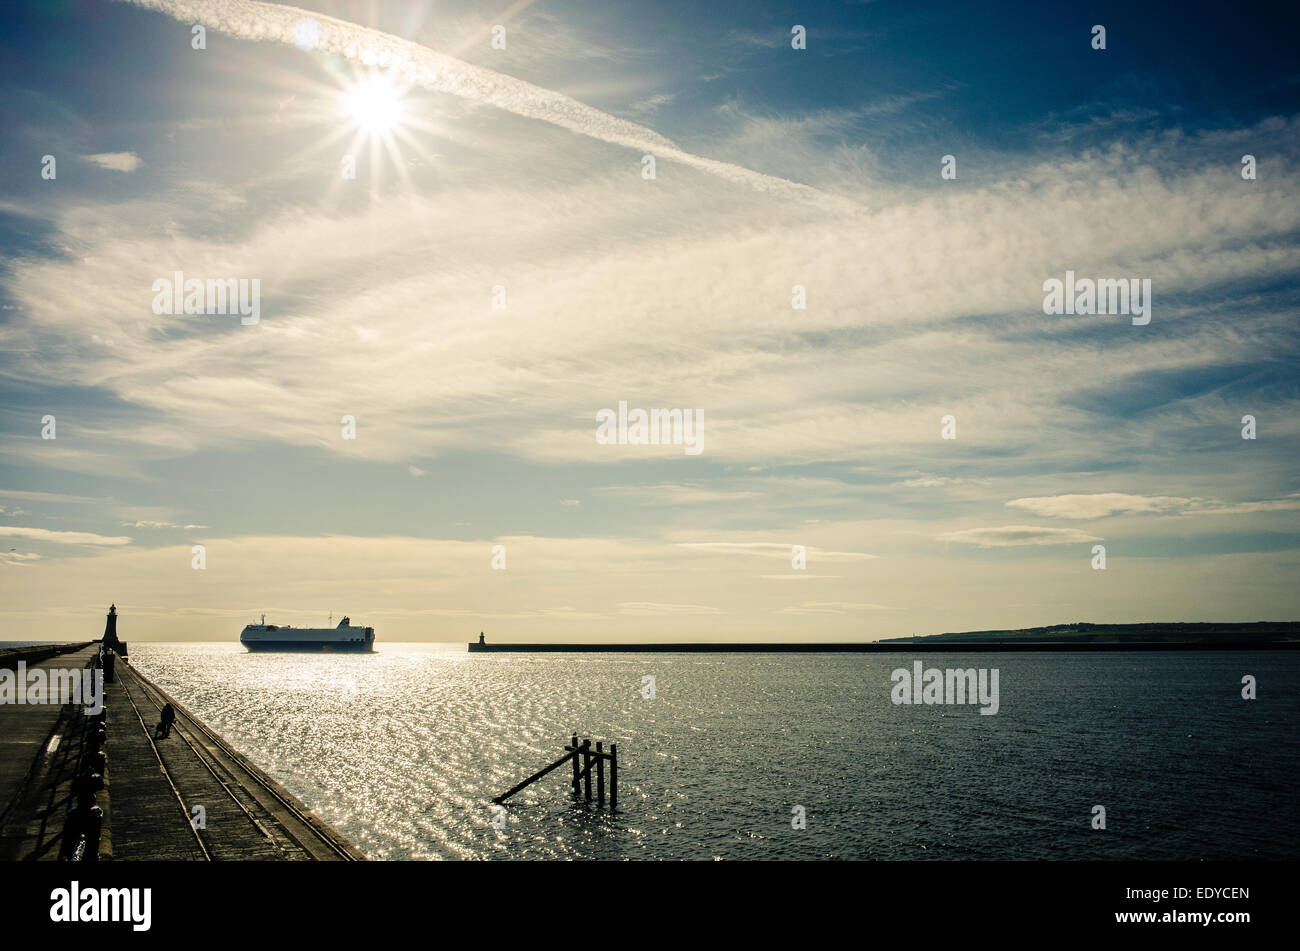 El ferry sale de Newcastle muelles y jefes en el Mar del Norte. Foto de stock